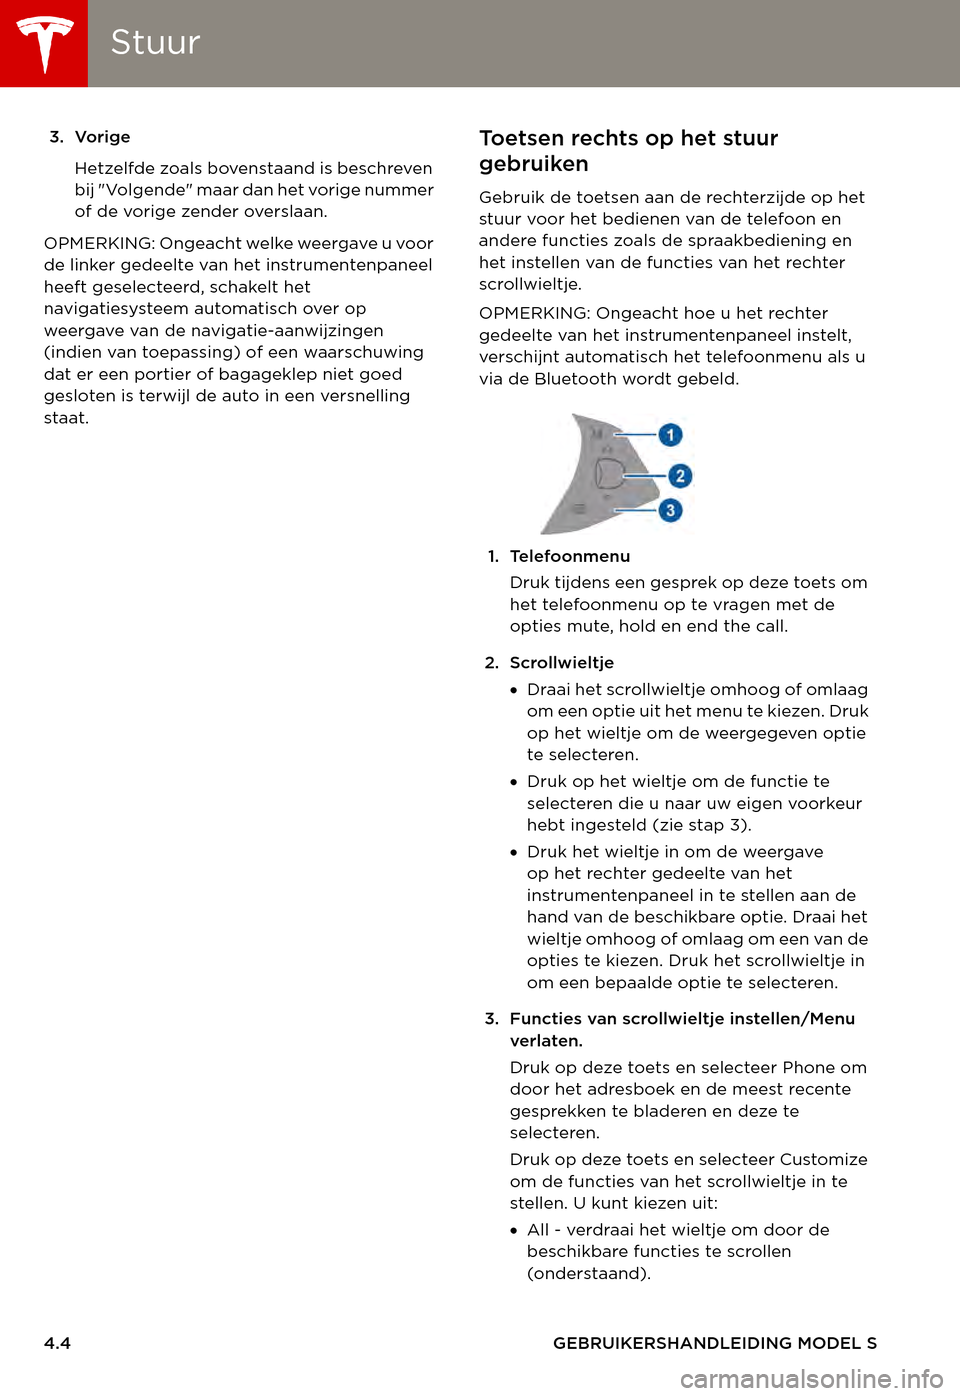 TESLA MODEL S 2015  Handleiding (in Dutch) StuurStuur
4.4GEBRUIKERSHANDLEIDING MODEL S
3. Vorige
Hetzelfde zoals bovenstaand is beschreven bij "Volgende" maar dan het vorige nummer of de vorige zender overslaan.
OPMERKING: Ongeacht welke weerg